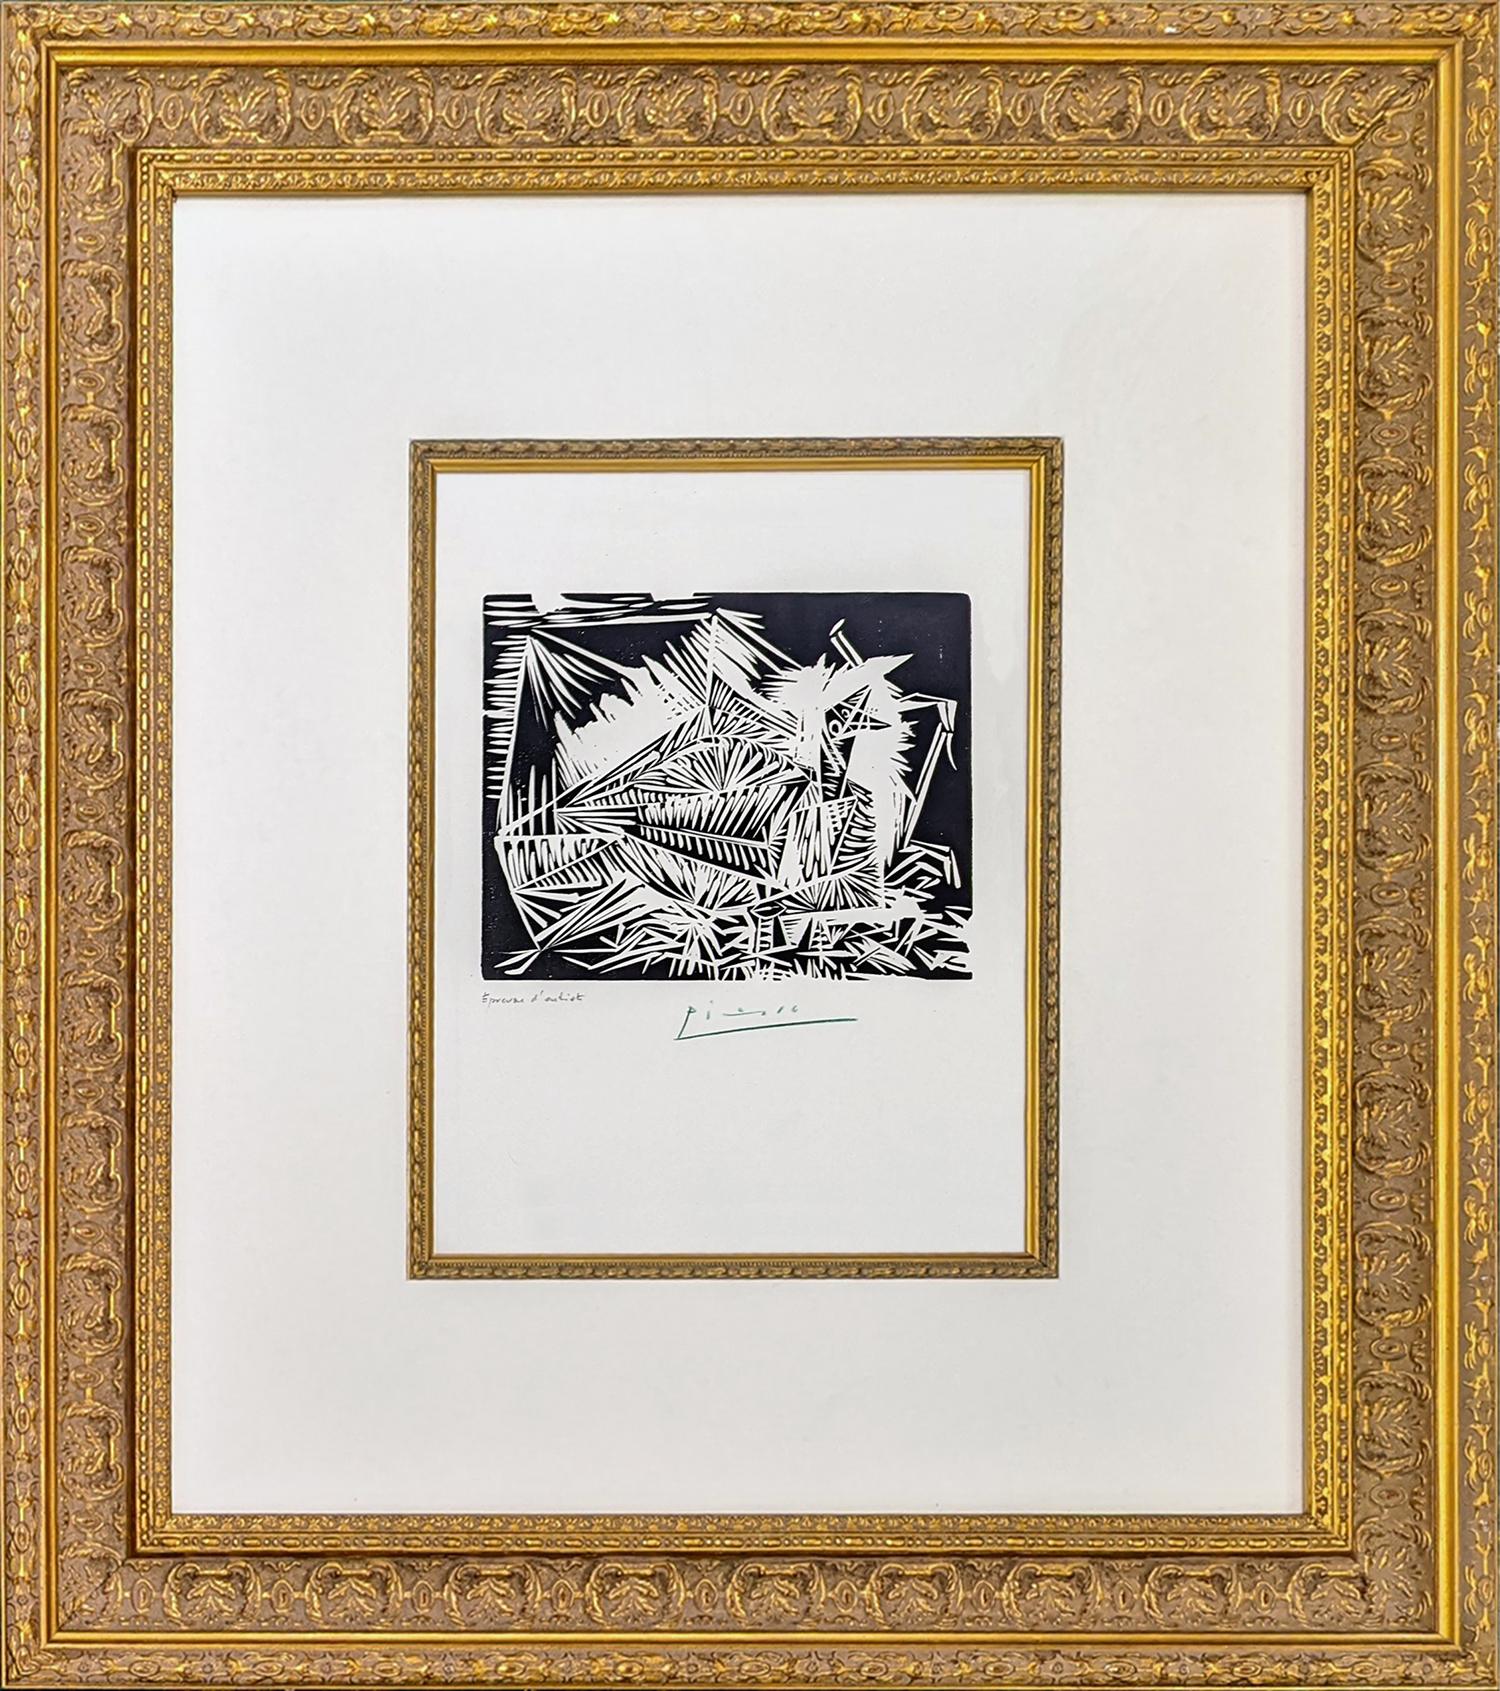 LE PIGEONNEAU (BLOCH 326) - Print by Pablo Picasso